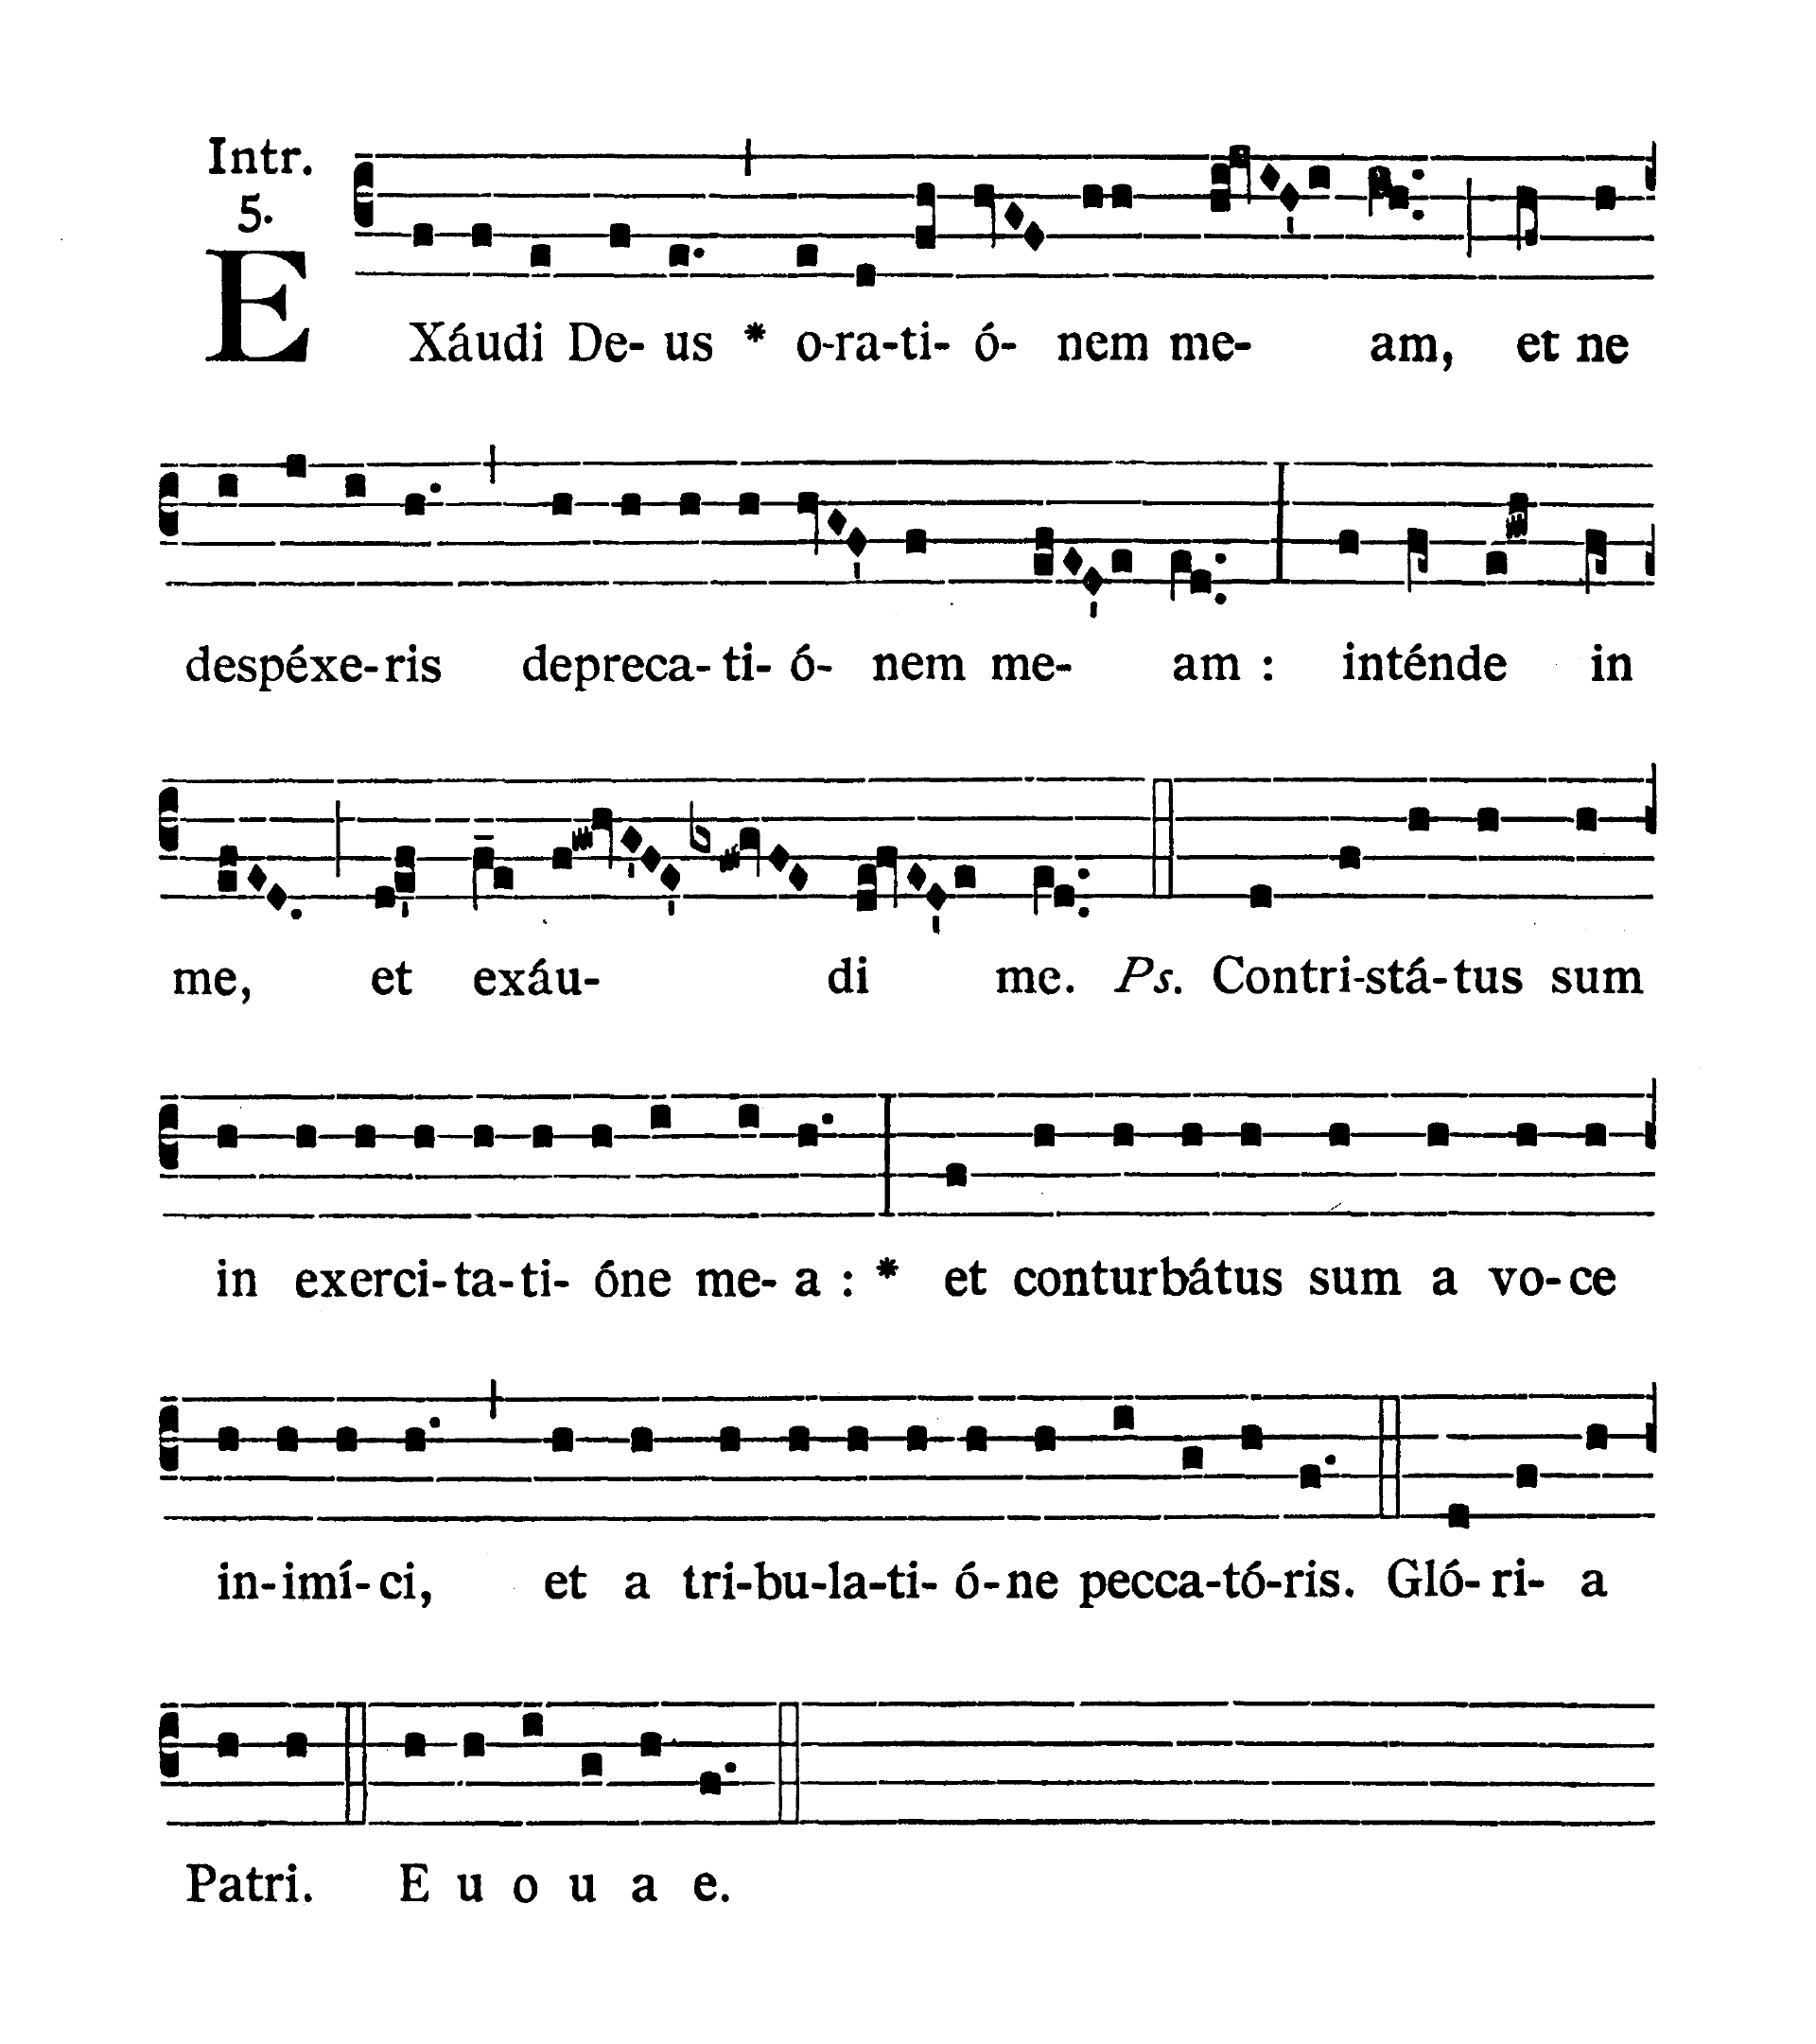 Feria III post Dominicam IV Quadragesimae (Tuesday after Fourth Sunday of Lent) - Introitus (Exaudi Deus)